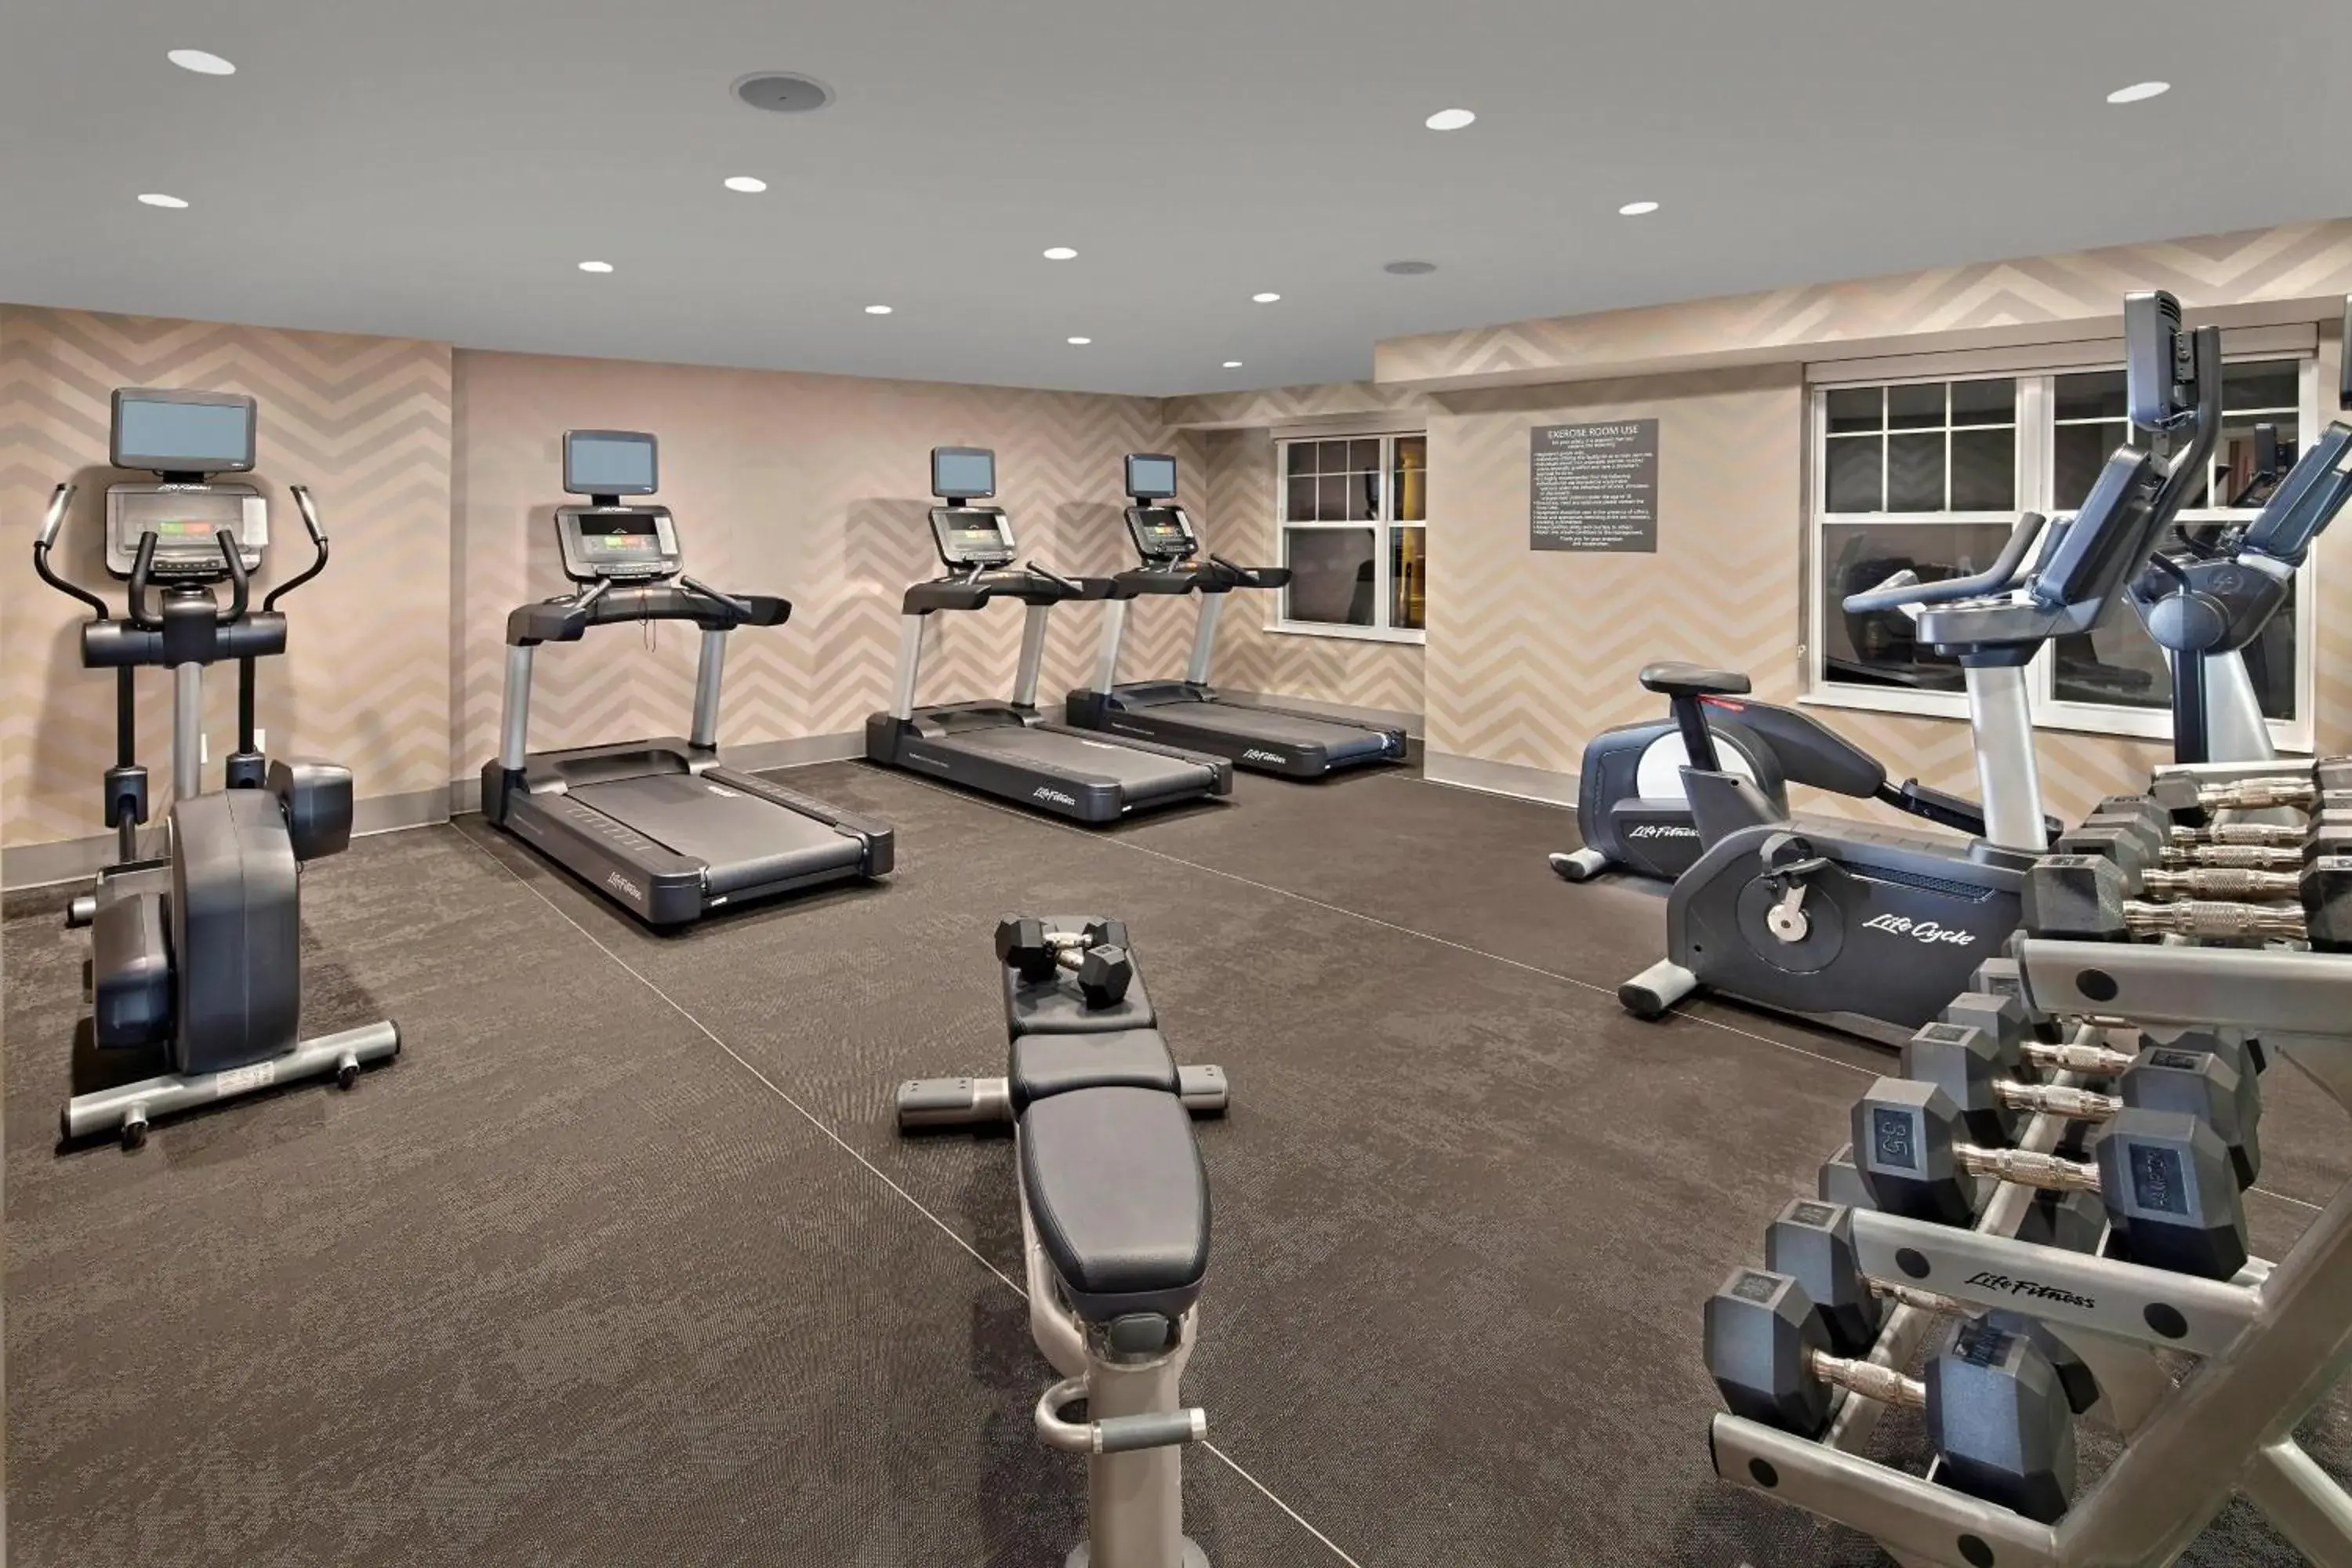 Fitness centre/facilities, Fitness Center/Facilities in Residence Inn Hartford Avon